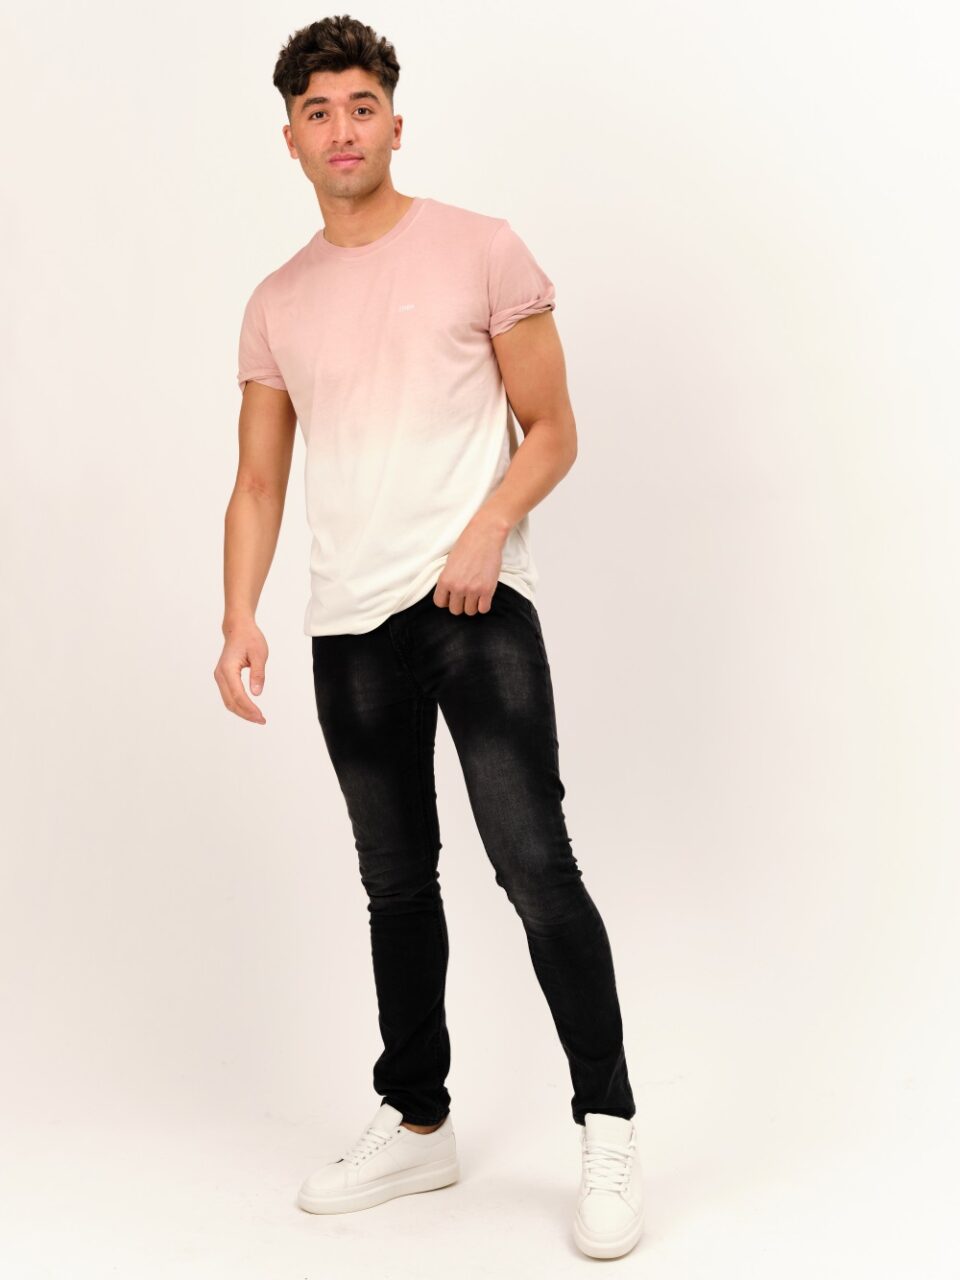 Gradient Pink-STROM-t-shirt